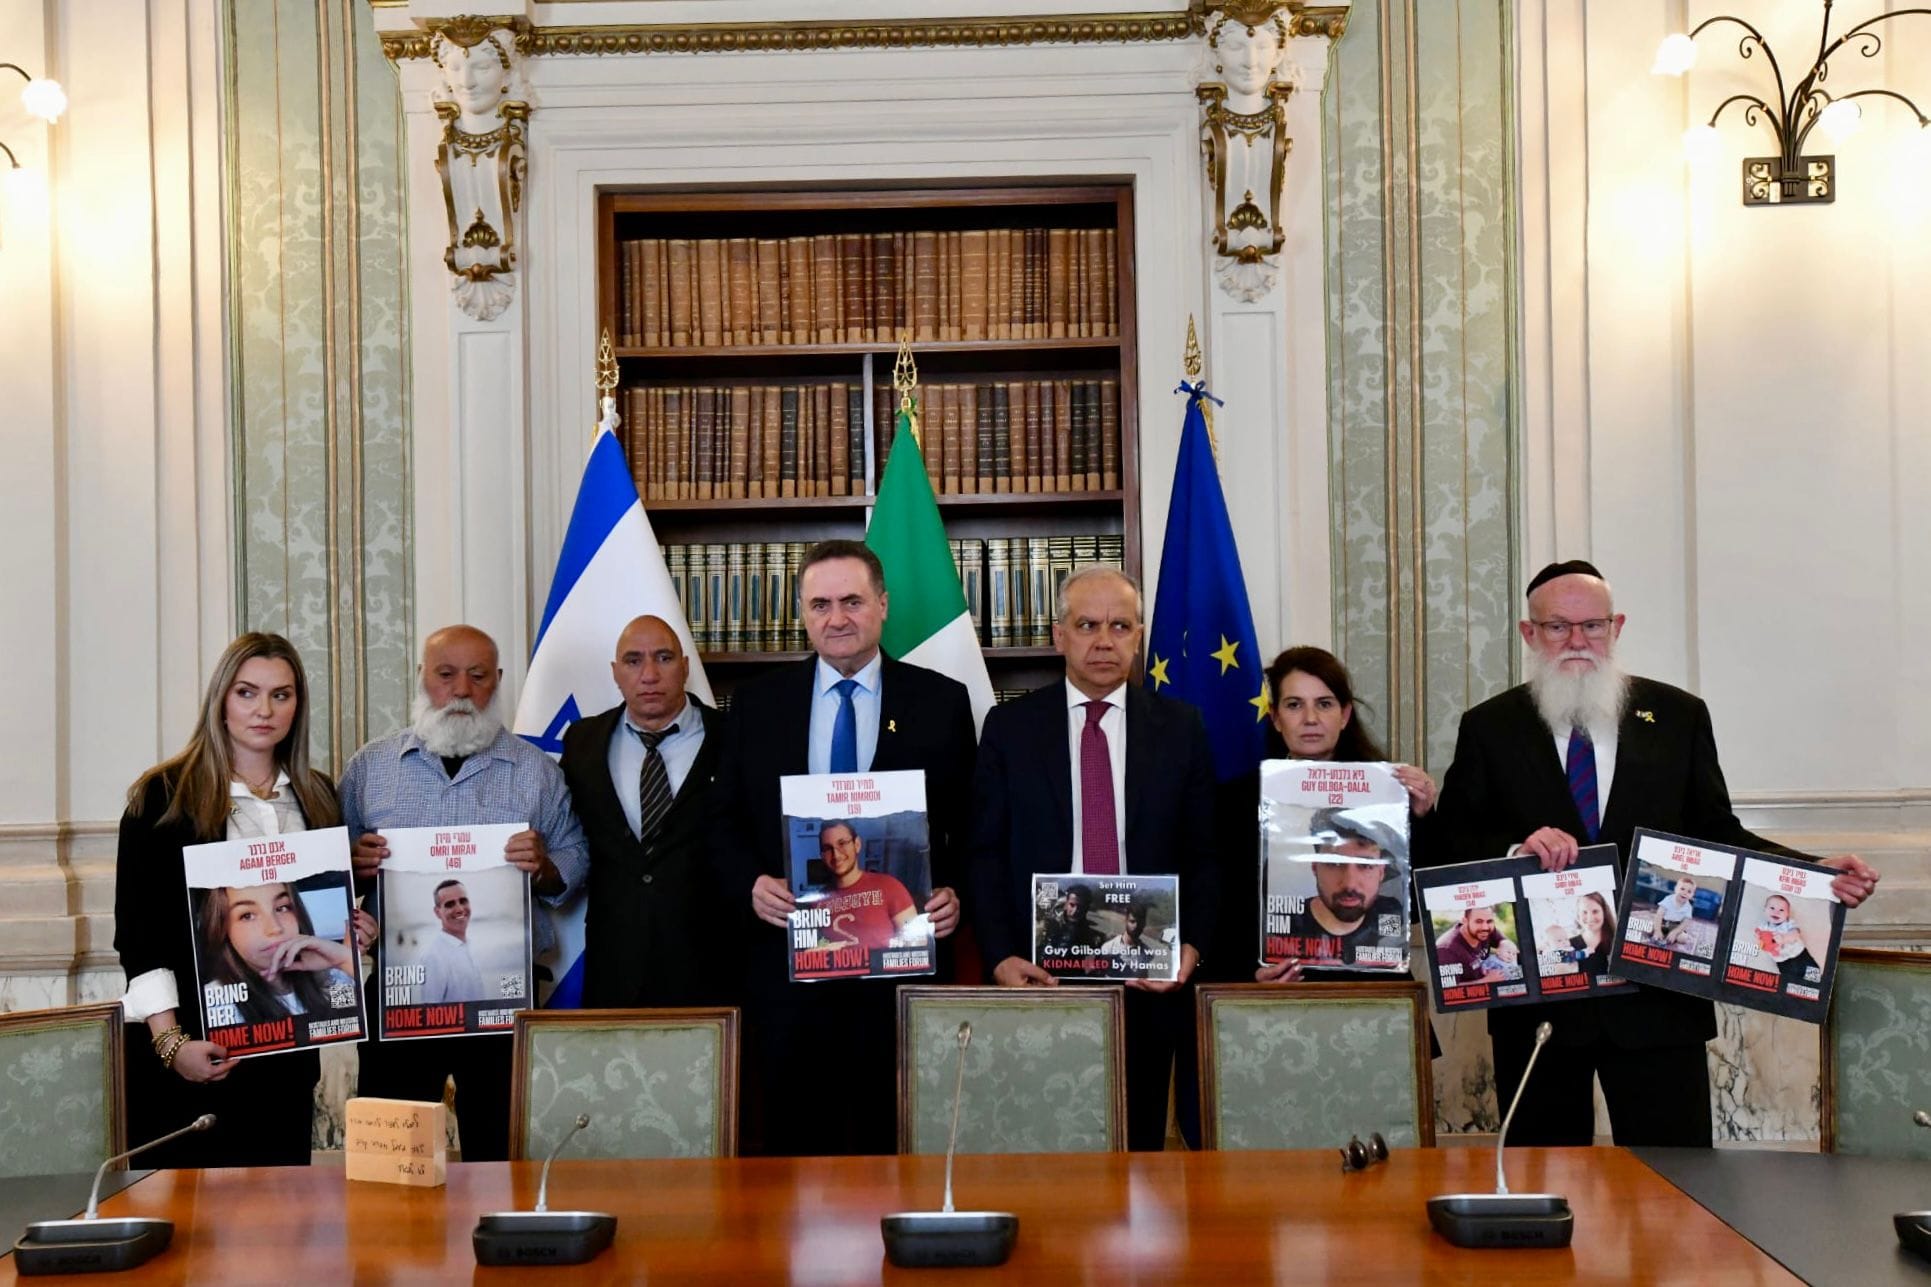 L’Italia si impegna con Israele a proteggere la comunità ebraica in mezzo agli avvertimenti sull’antisemitismo